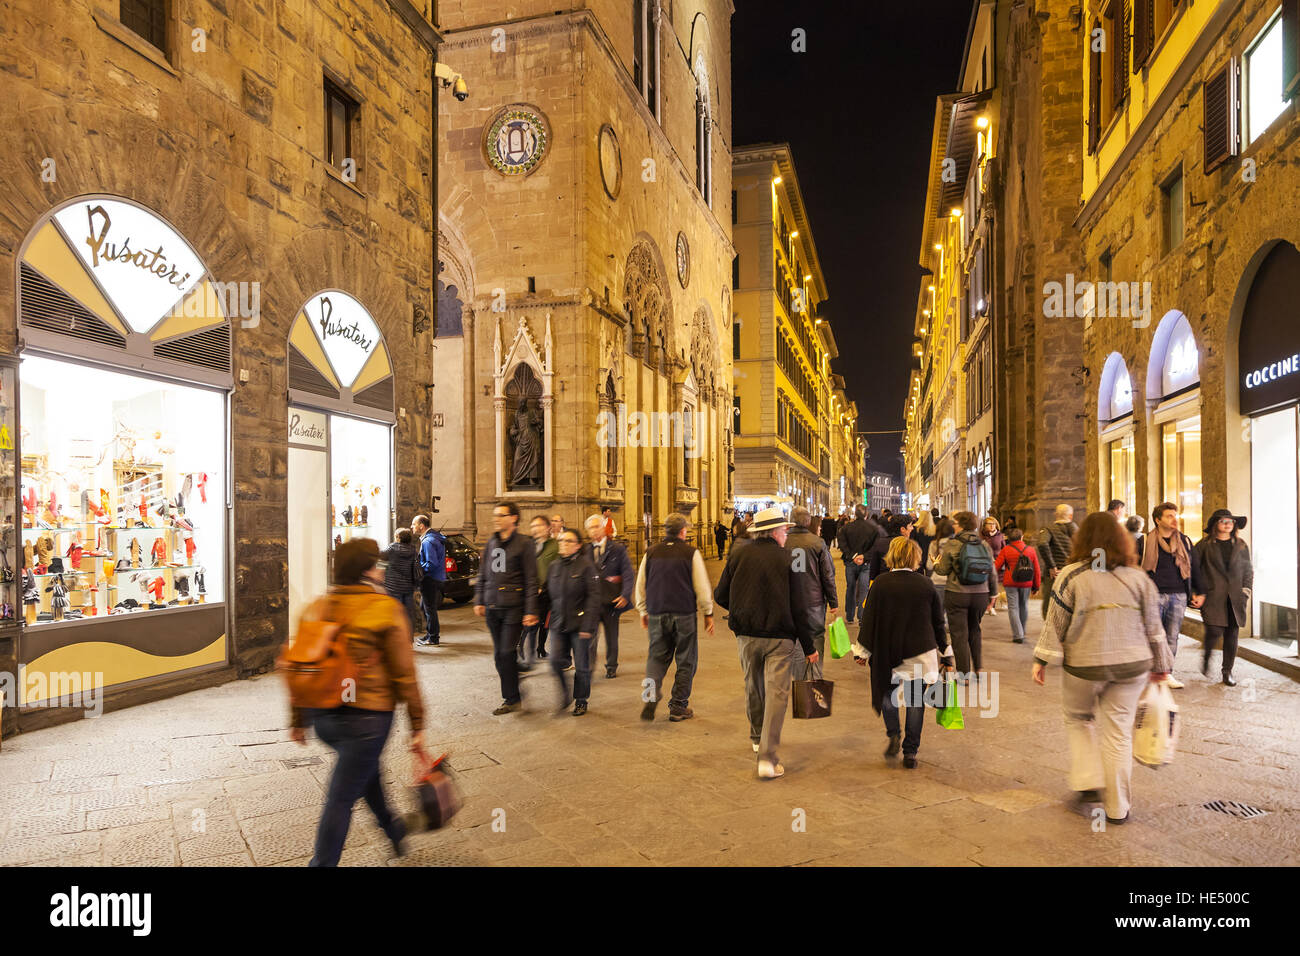 FLORENCE, ITALIE - 4 NOVEMBRE 2016 : les gens de shopping sur la via Calzaiuoli charcuterie près de l'église Orsanmichele. Église a été initialement construit comme un marché aux grains Banque D'Images